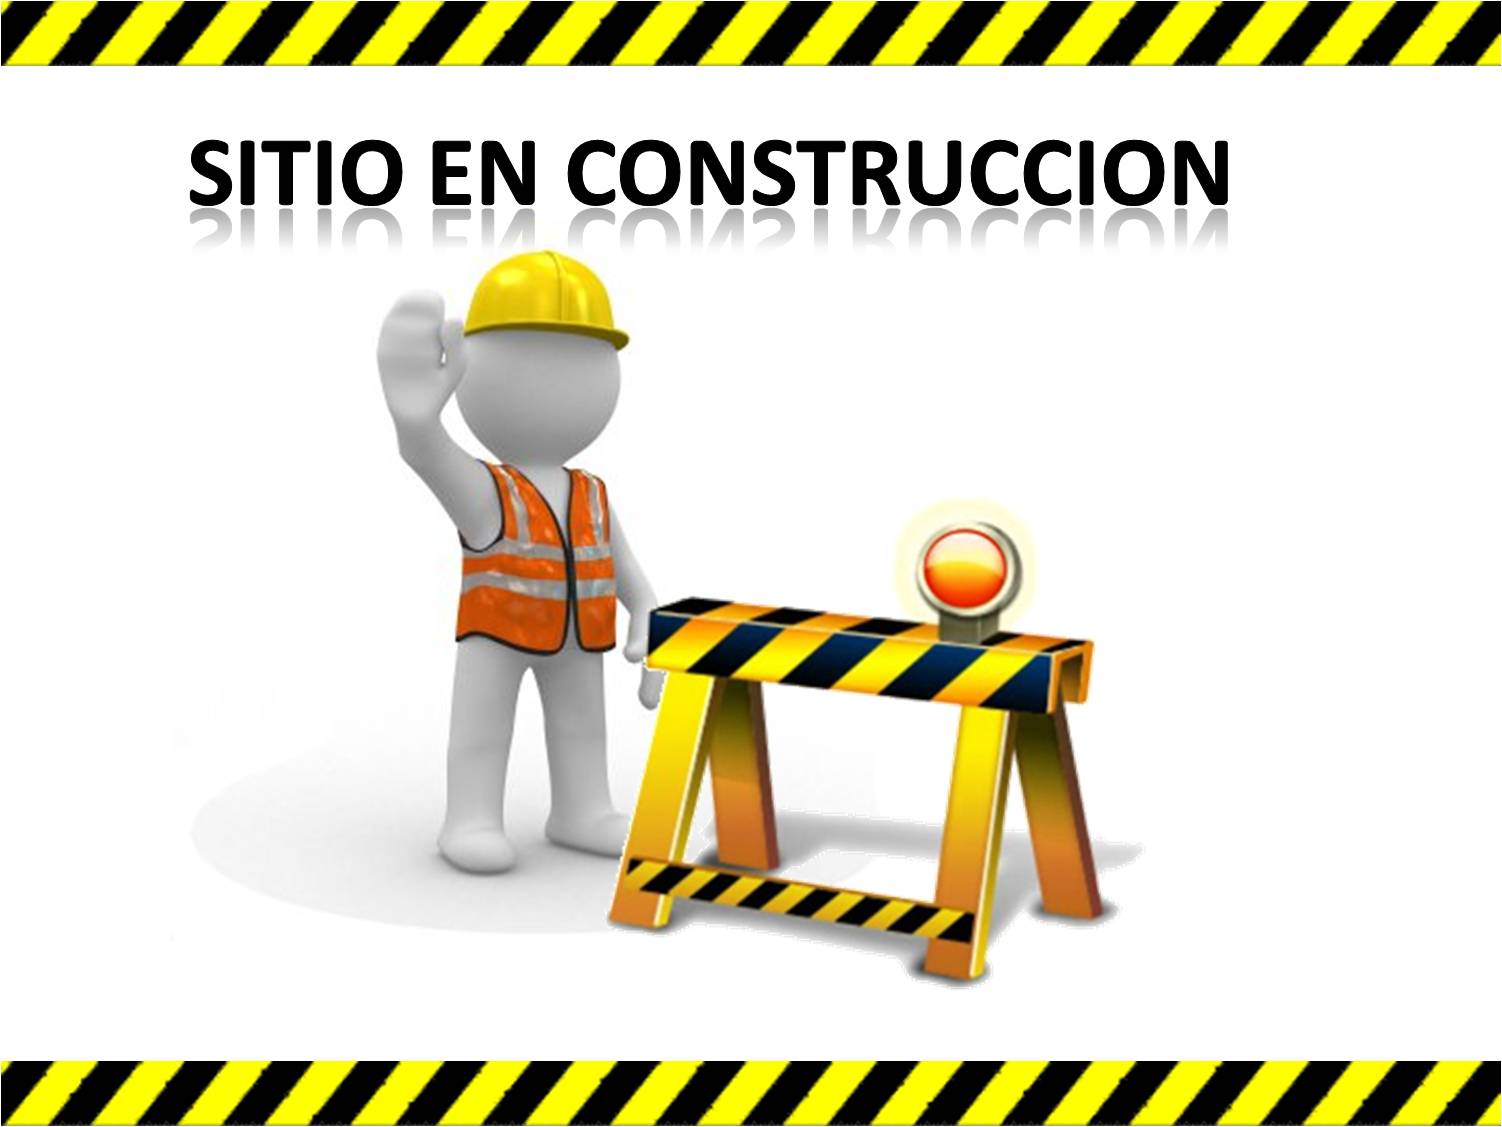 En construcción